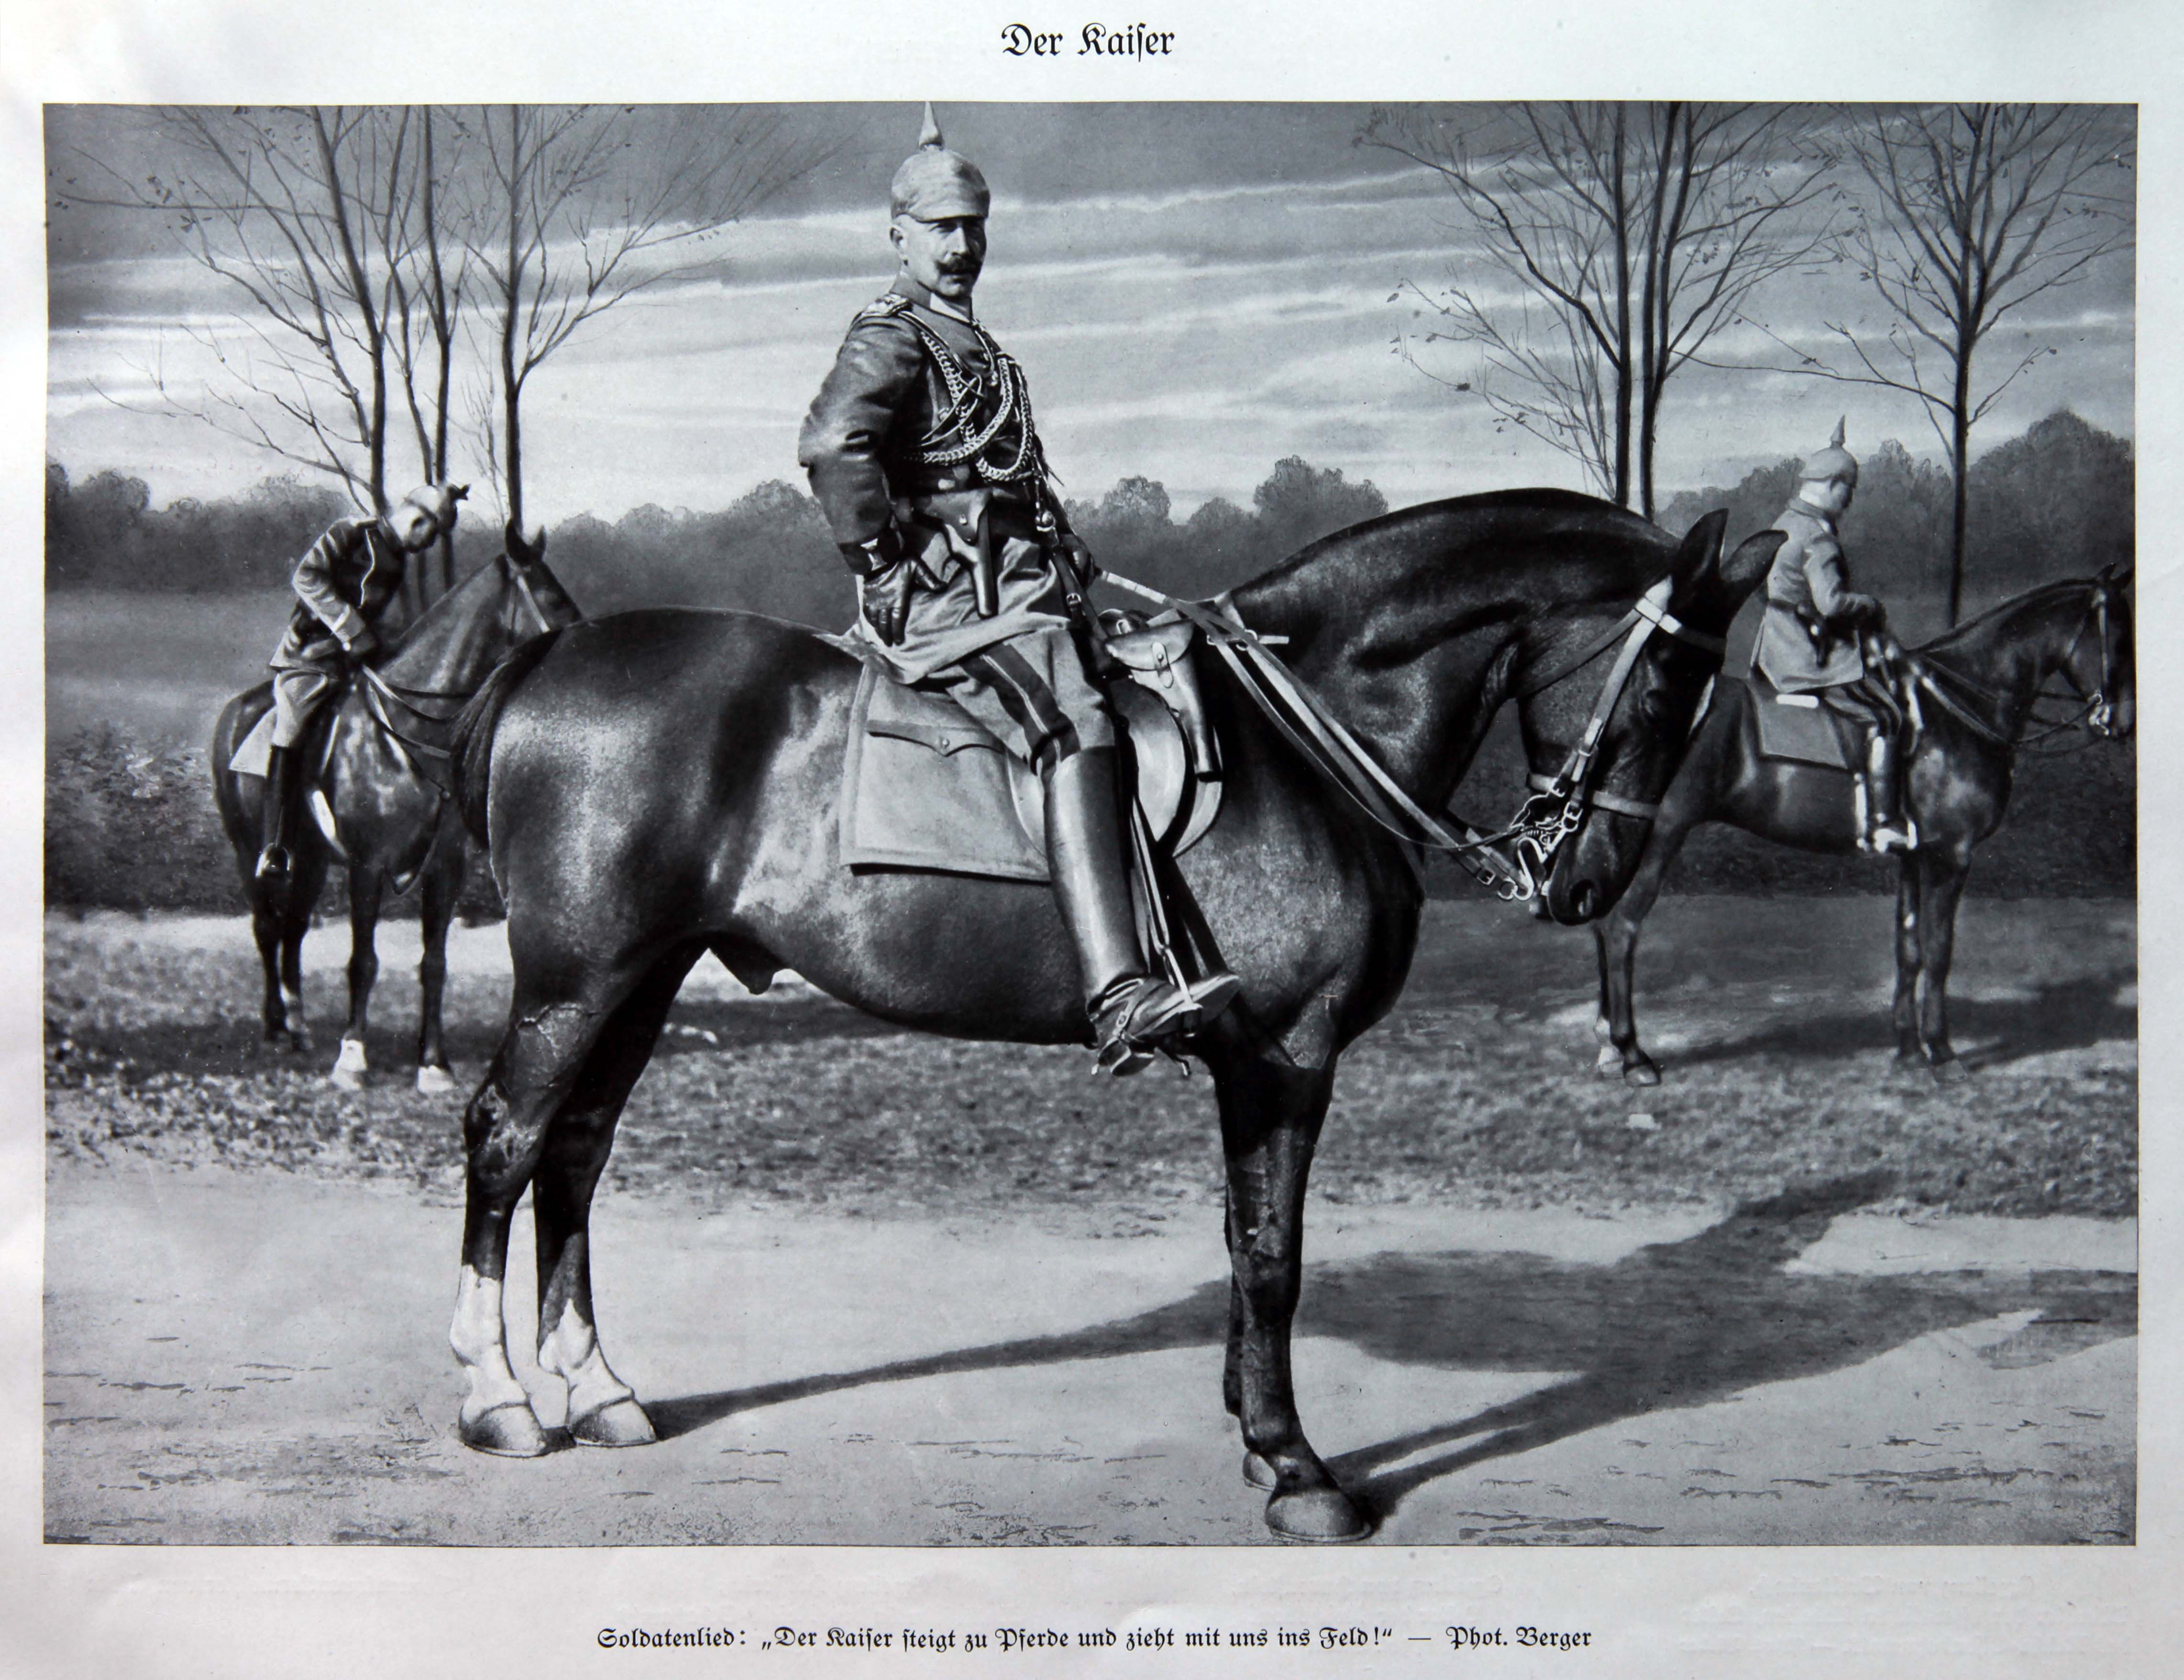 Canto militare: "L'imperatore sale a cavallo e scende con noi in campo!"